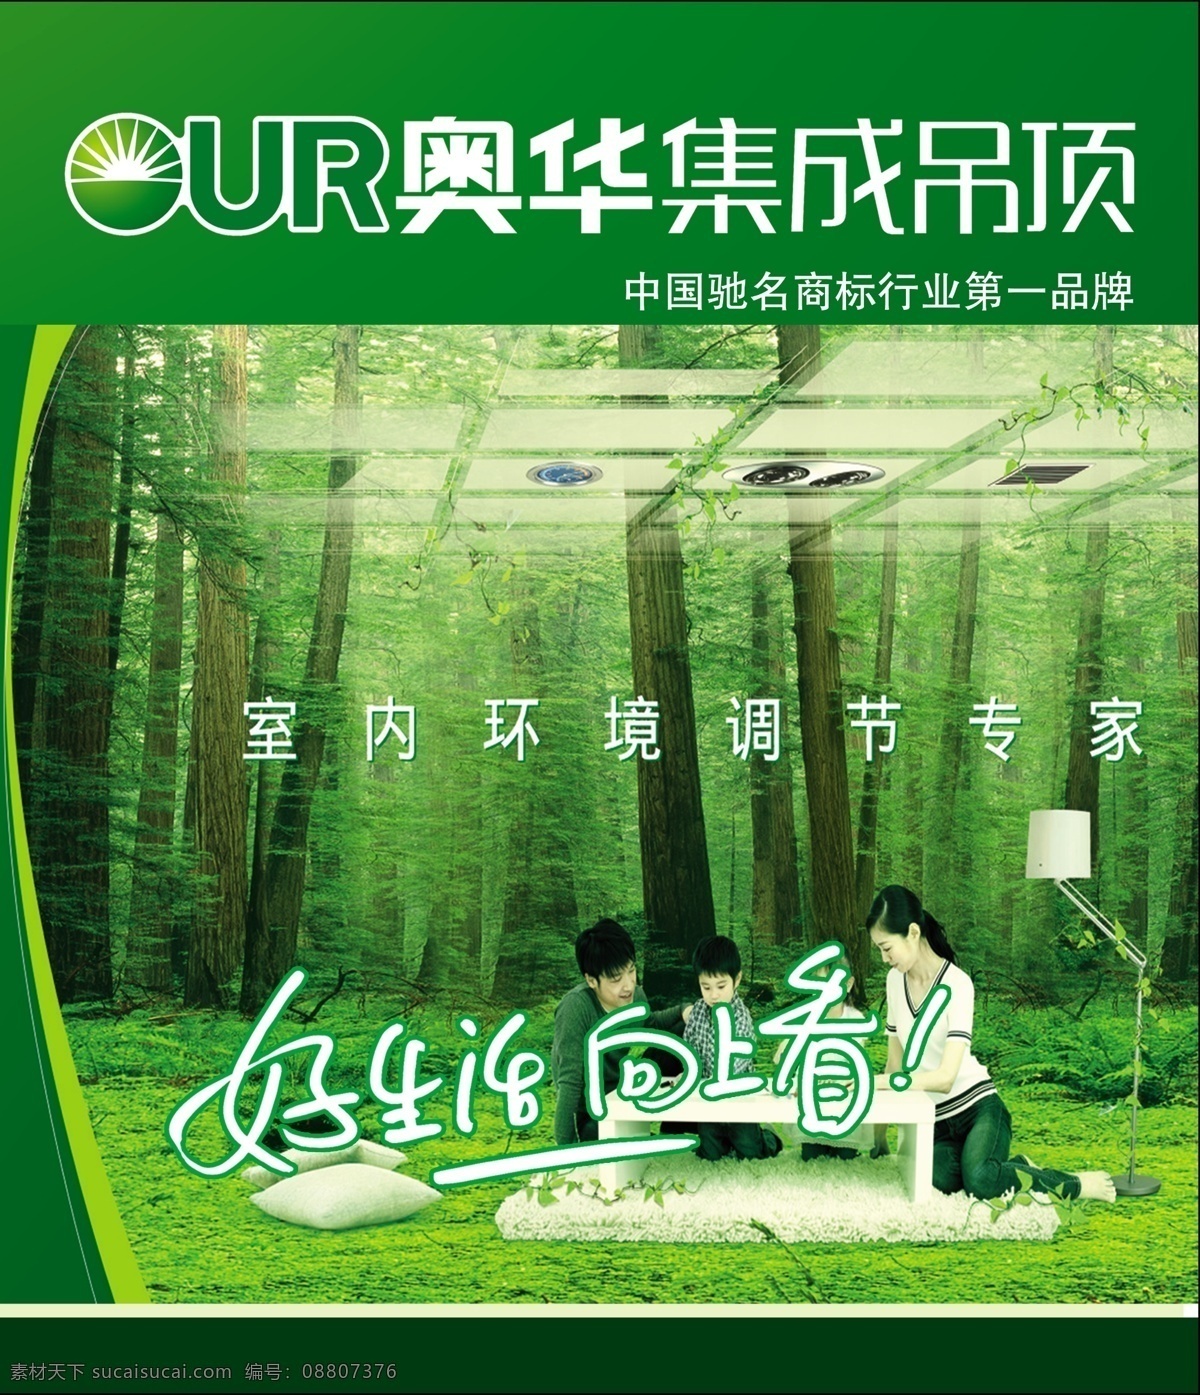 奥华集成吊顶 绿色 室内环境 调节 专家 好生活向上看 树木 树林 环保 一家人 中国驰名商标 广告海报设计 广告设计模板 源文件